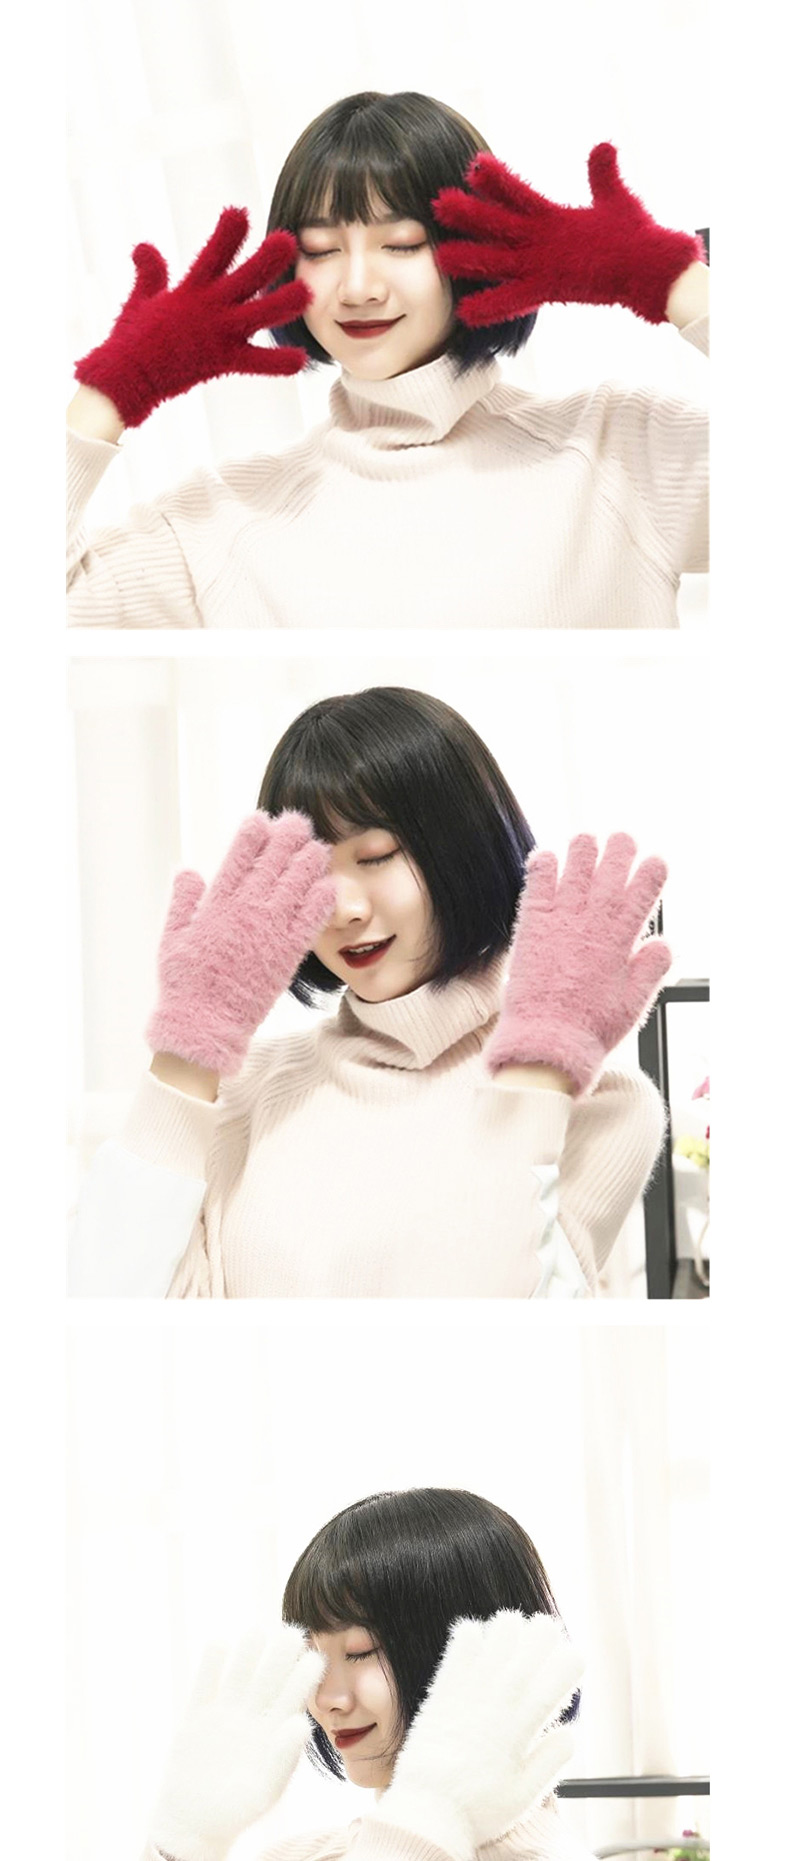 Fashion Khaki Plush Touch Screen Five-finger Gloves,Full Finger Gloves